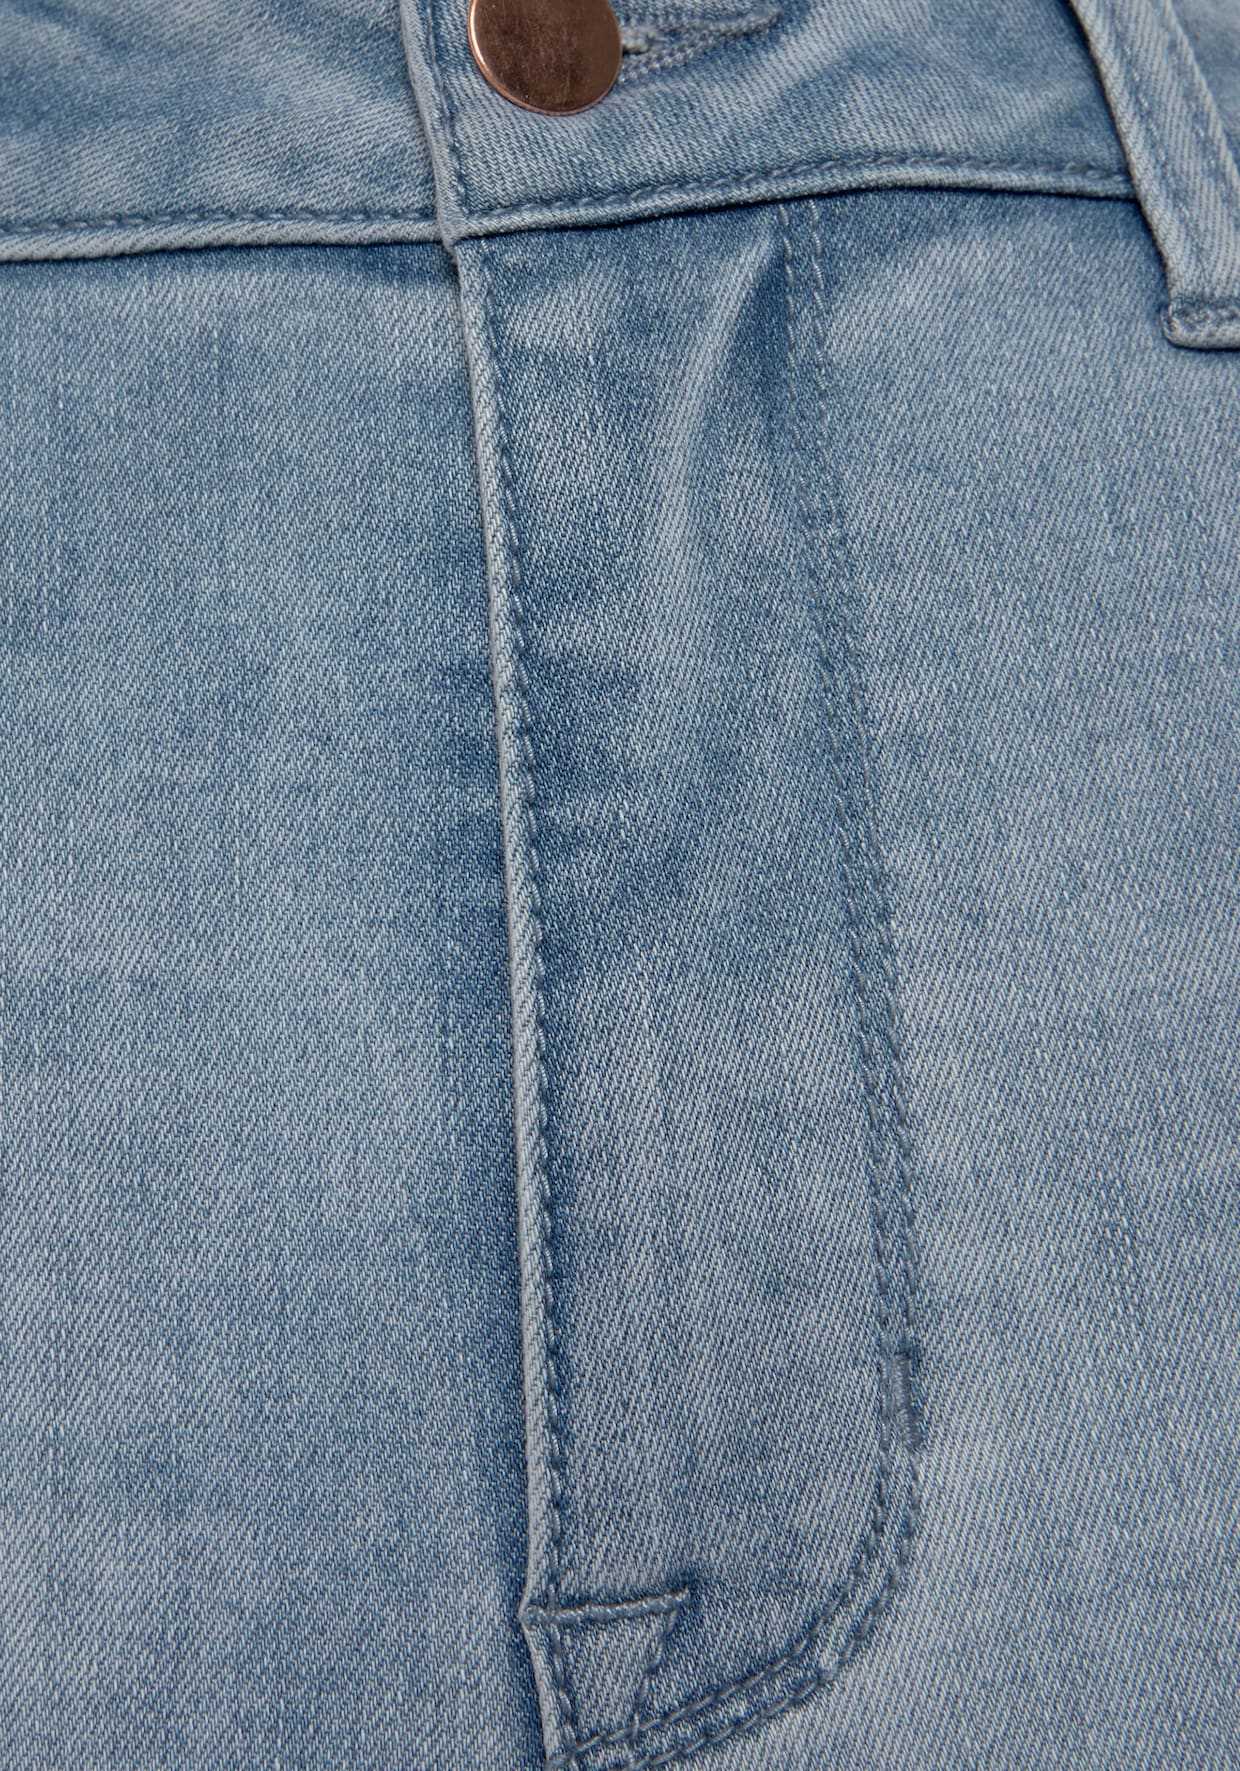 LASCANA High waist jeans - light blue washed